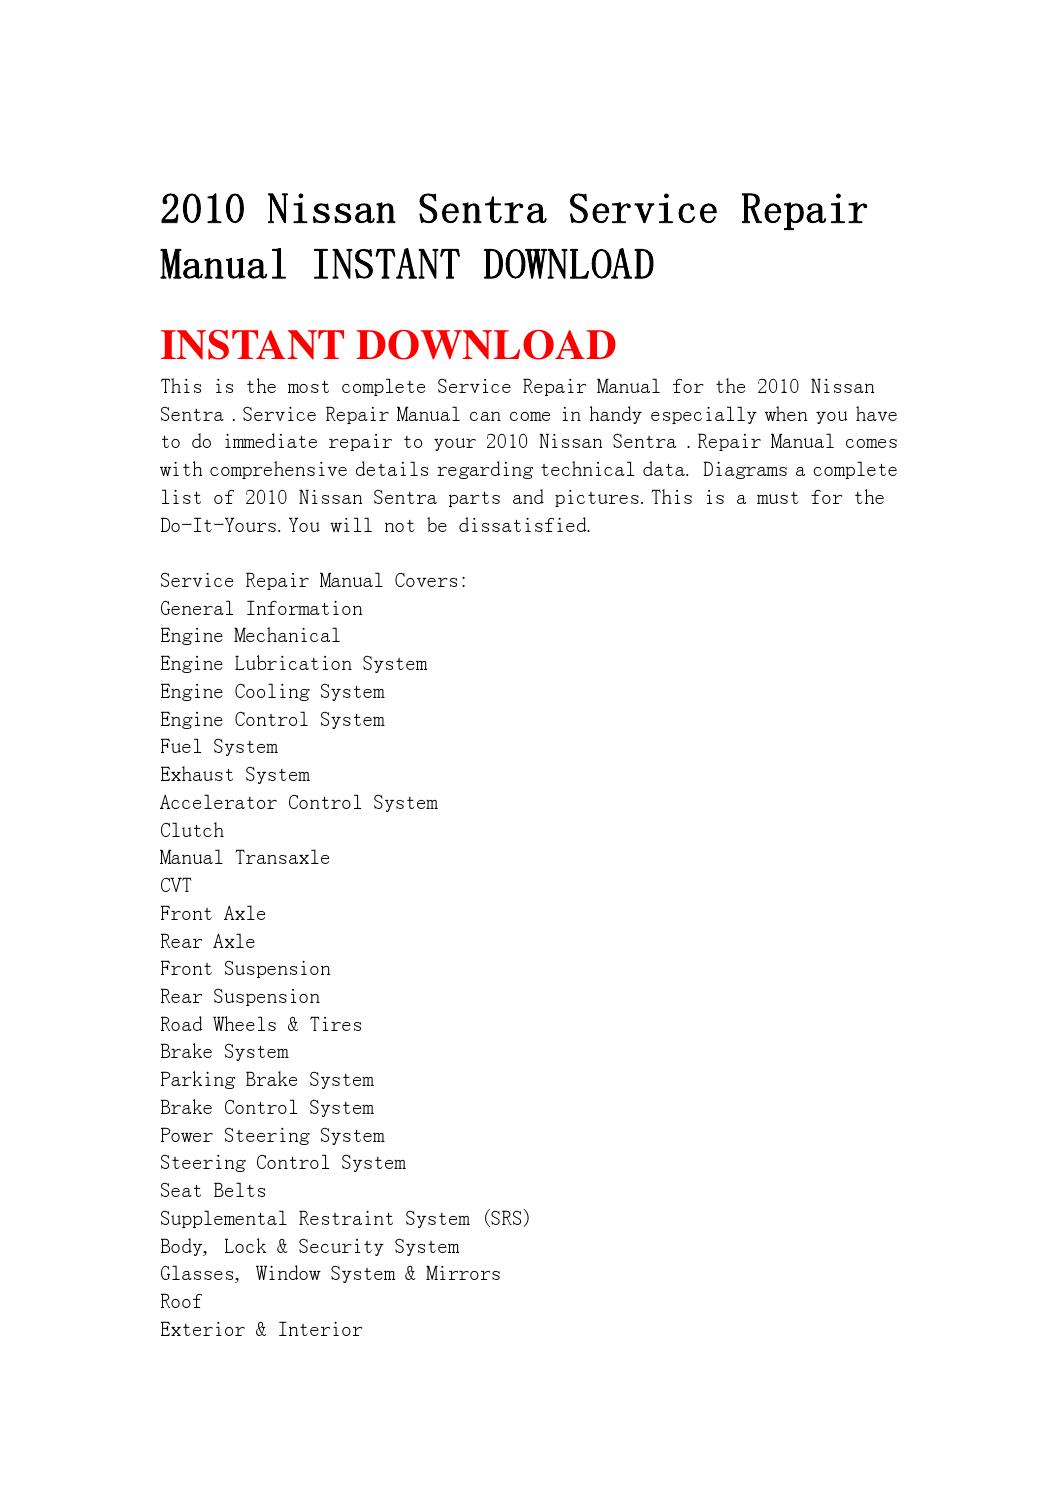 Free nissan sentra repair manual